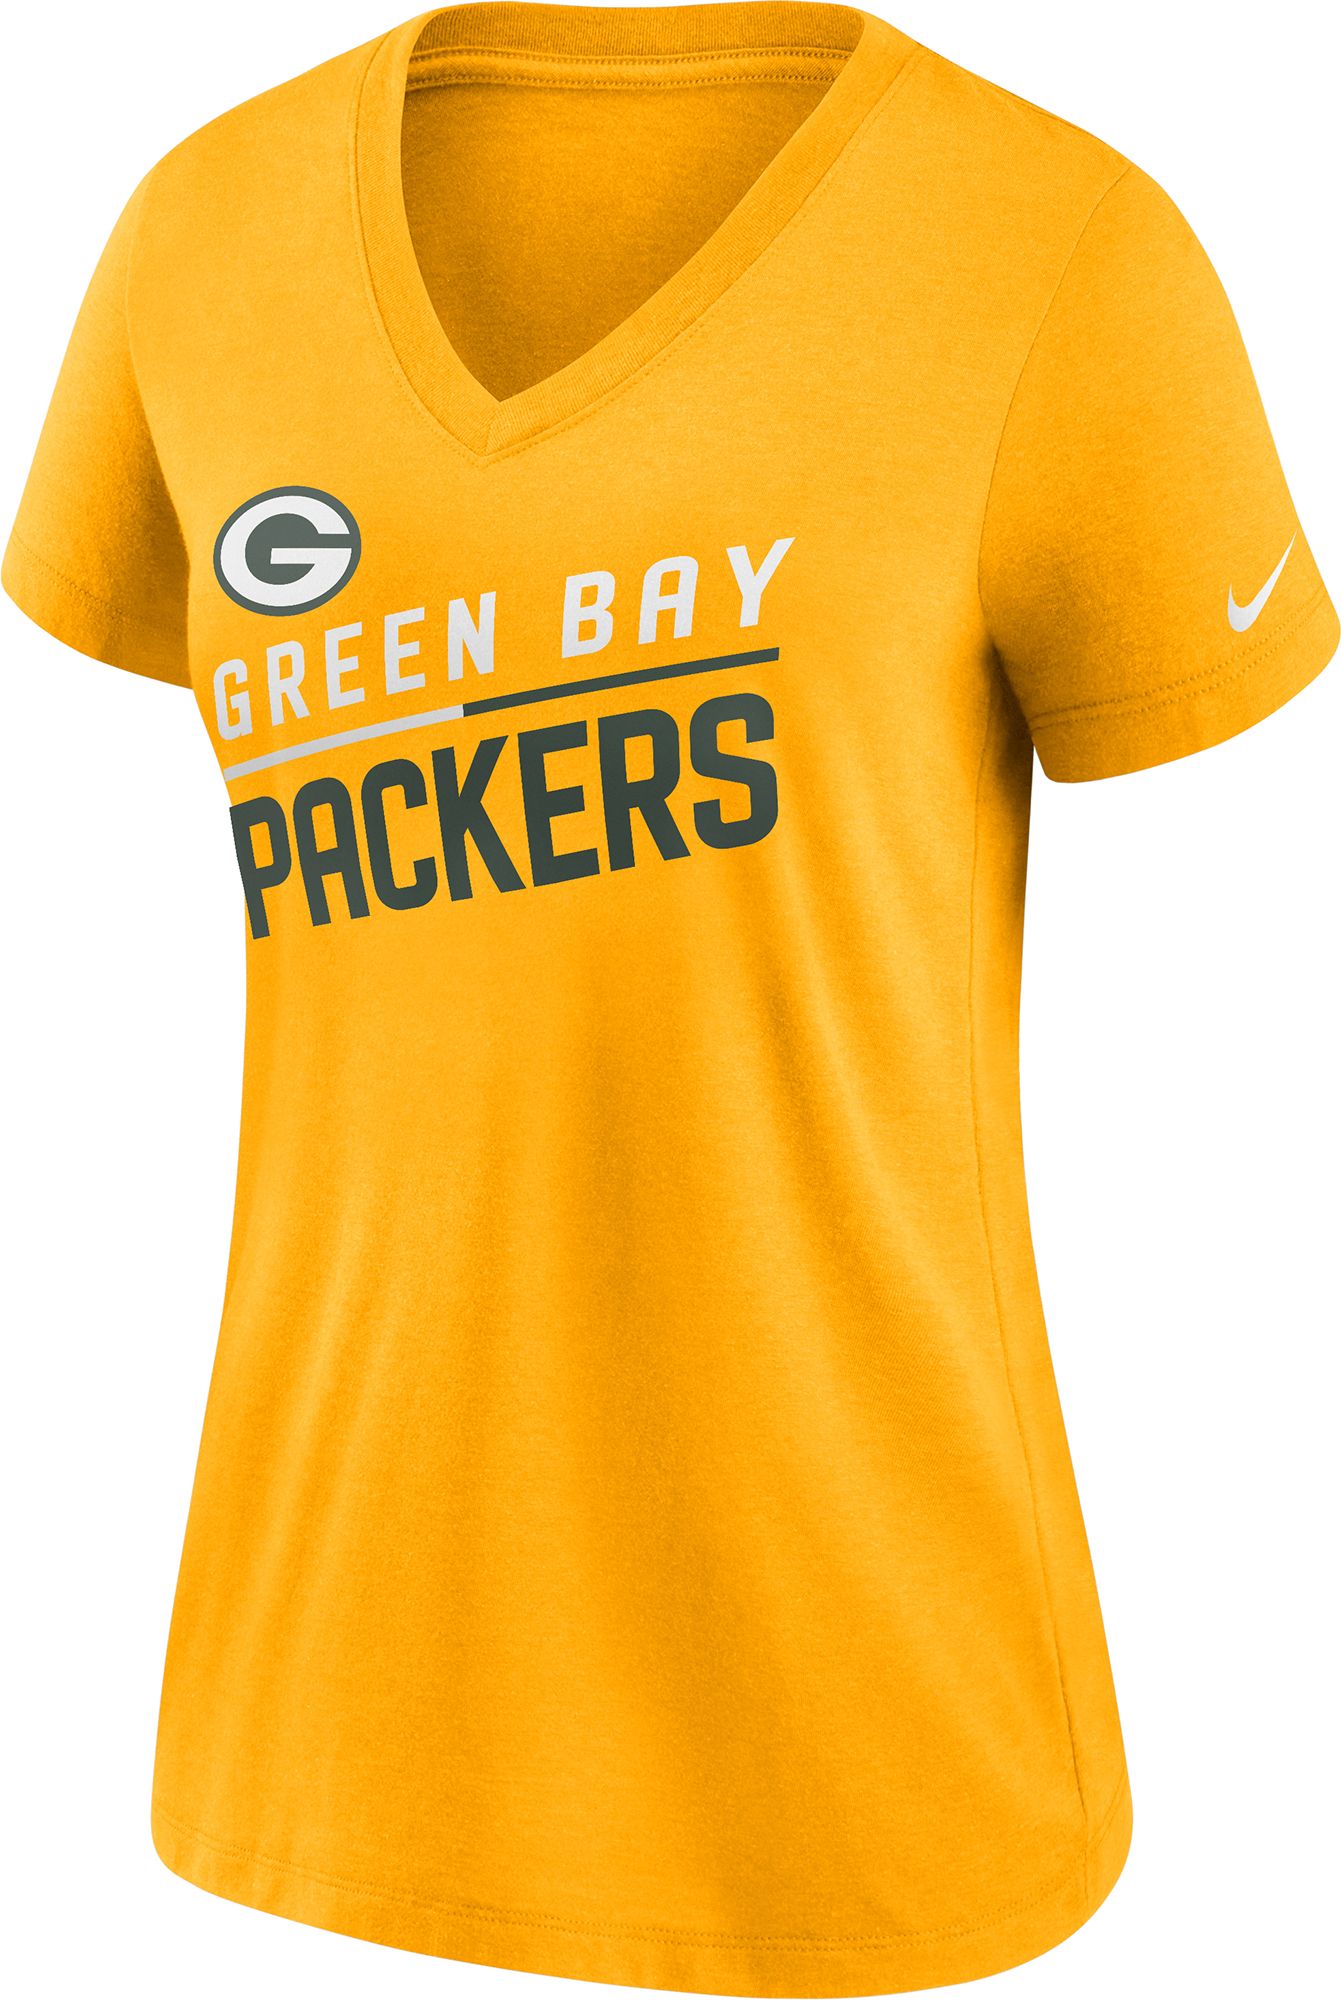 Nike / Women's Green Bay Packers Slant Gold V-Neck T-Shirt